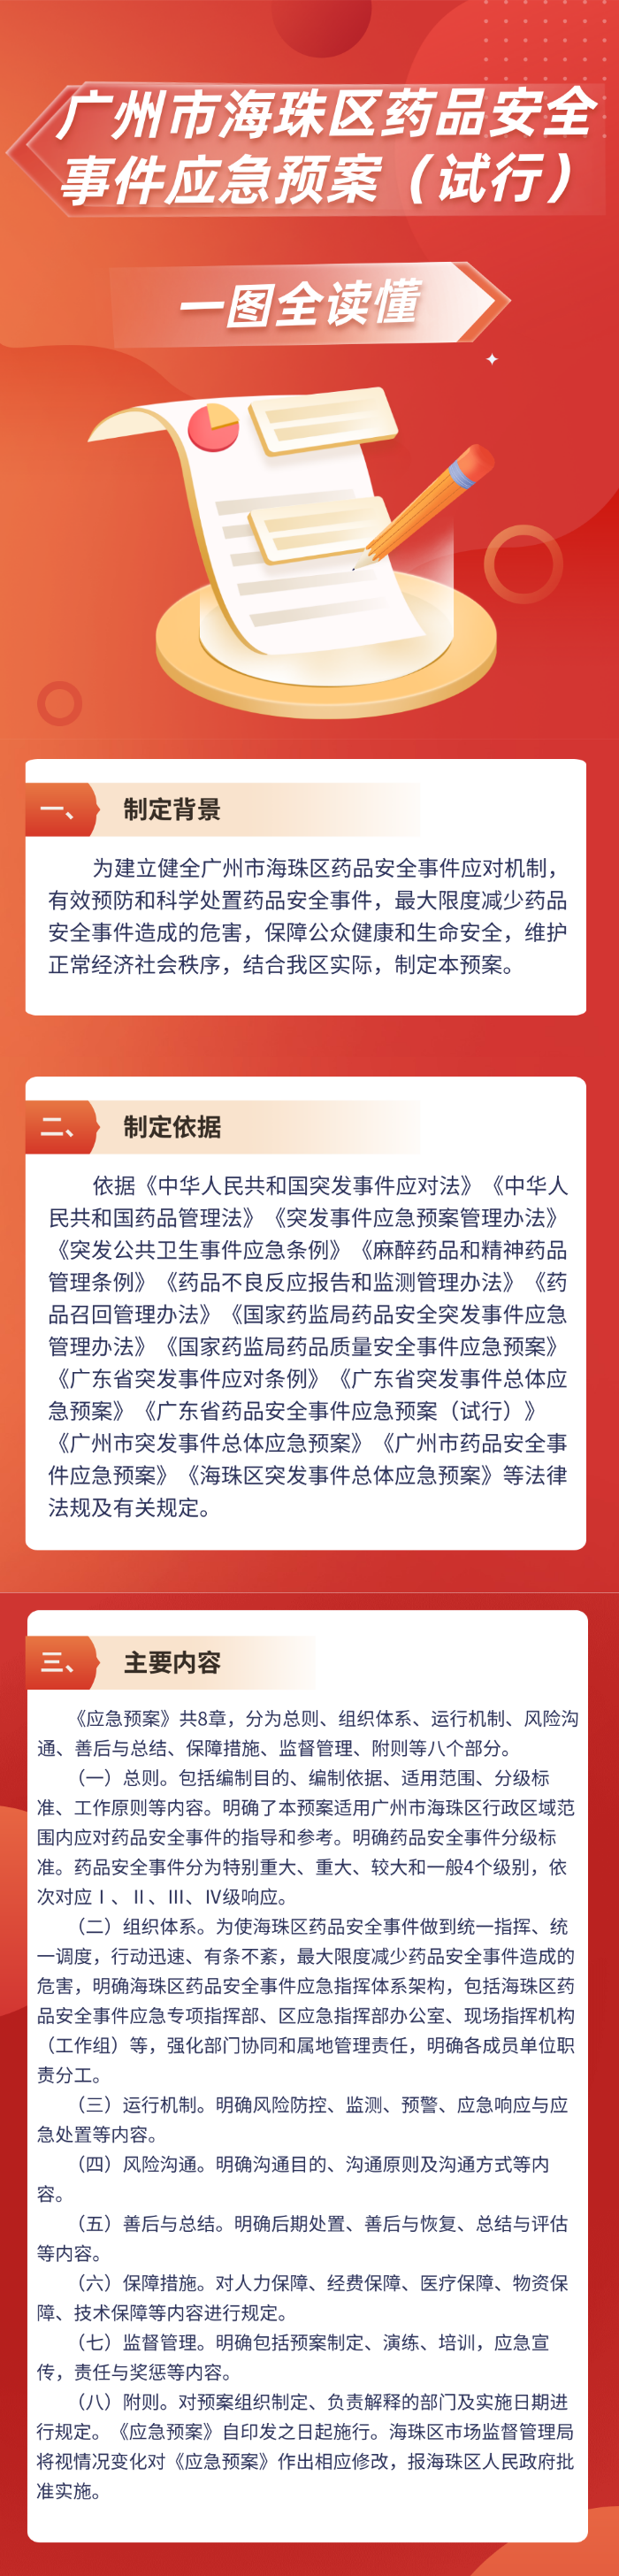 【一图读懂】关于《广州市海珠区药品安全事件应急预案（试行）》的政策解读.png